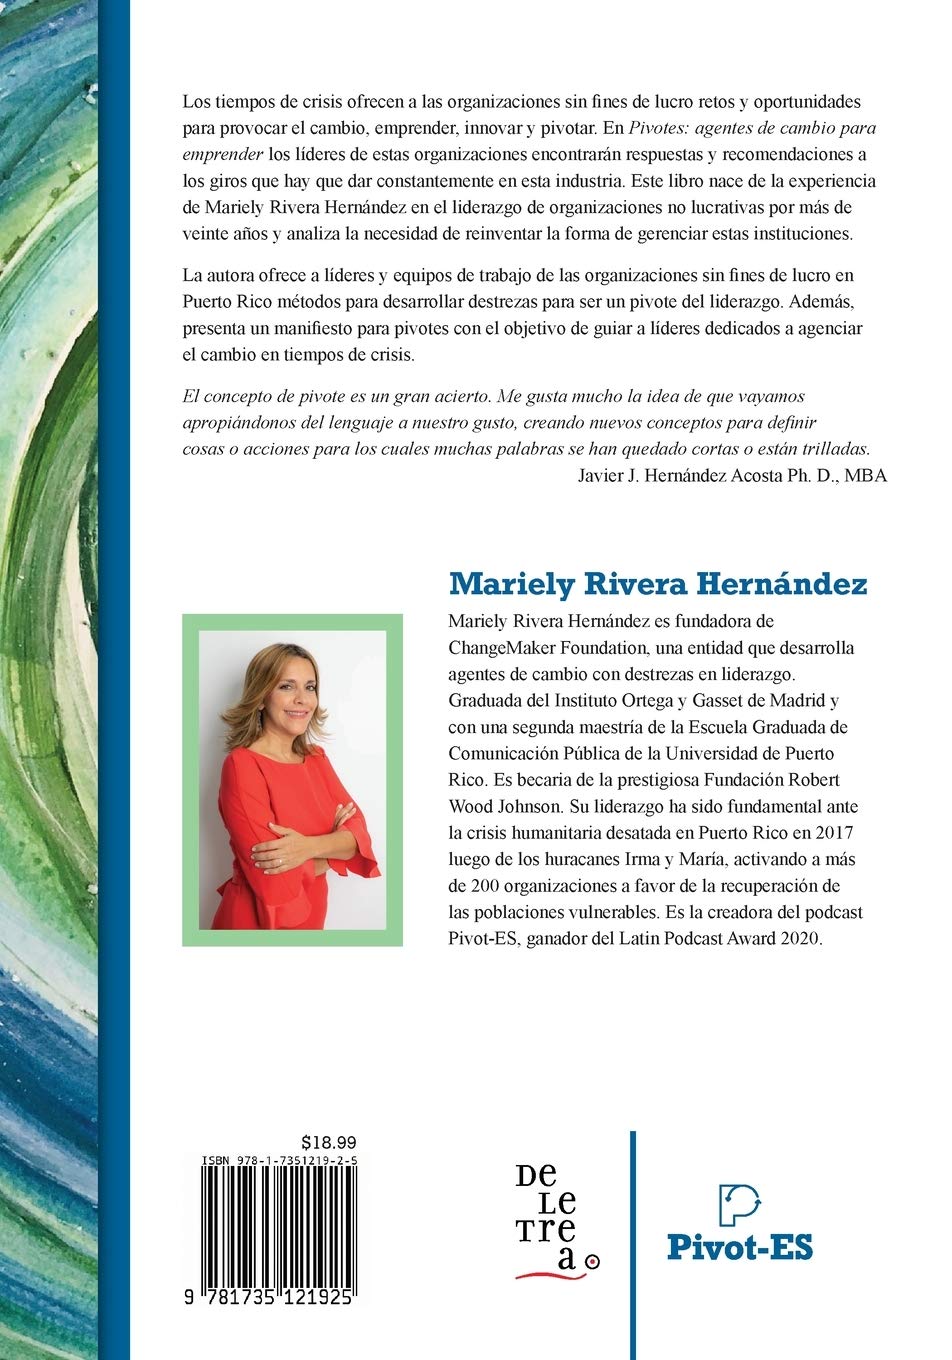 Pivotes: agentes de cambio para emprender - Mariely Rivera-Hernández